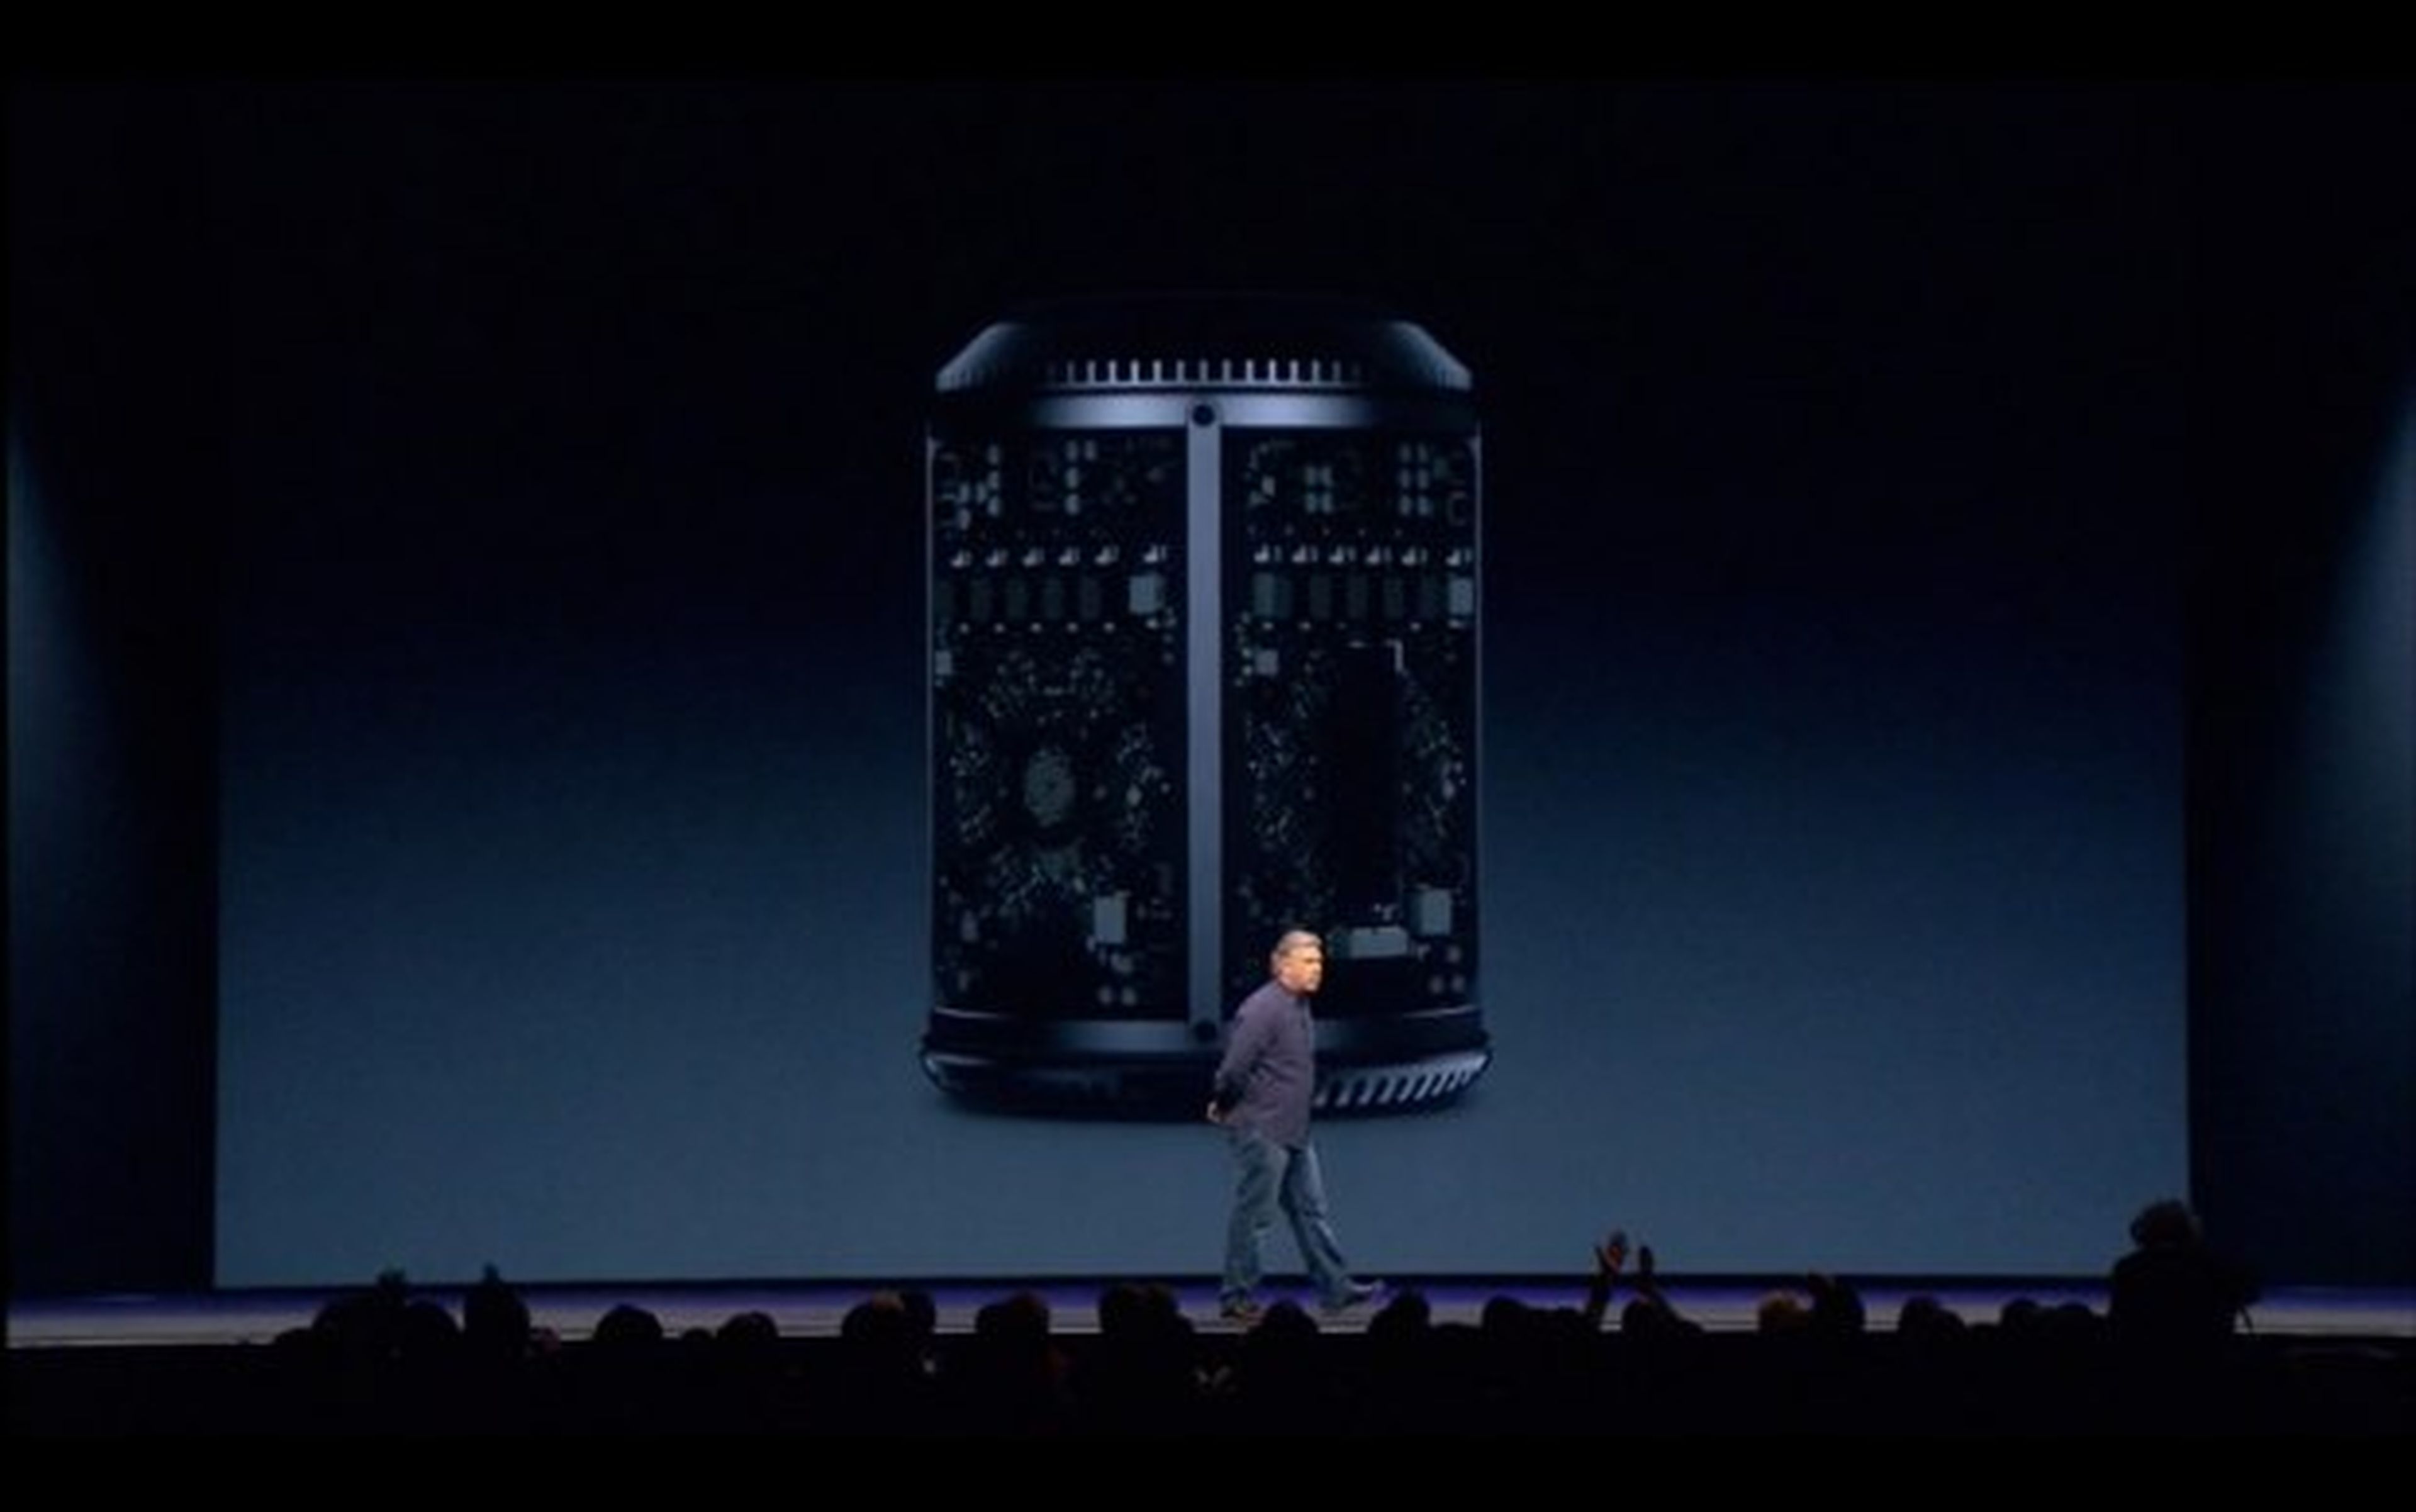 Nuevo Mac Pro presentado en el WWDC 2013 por Apple